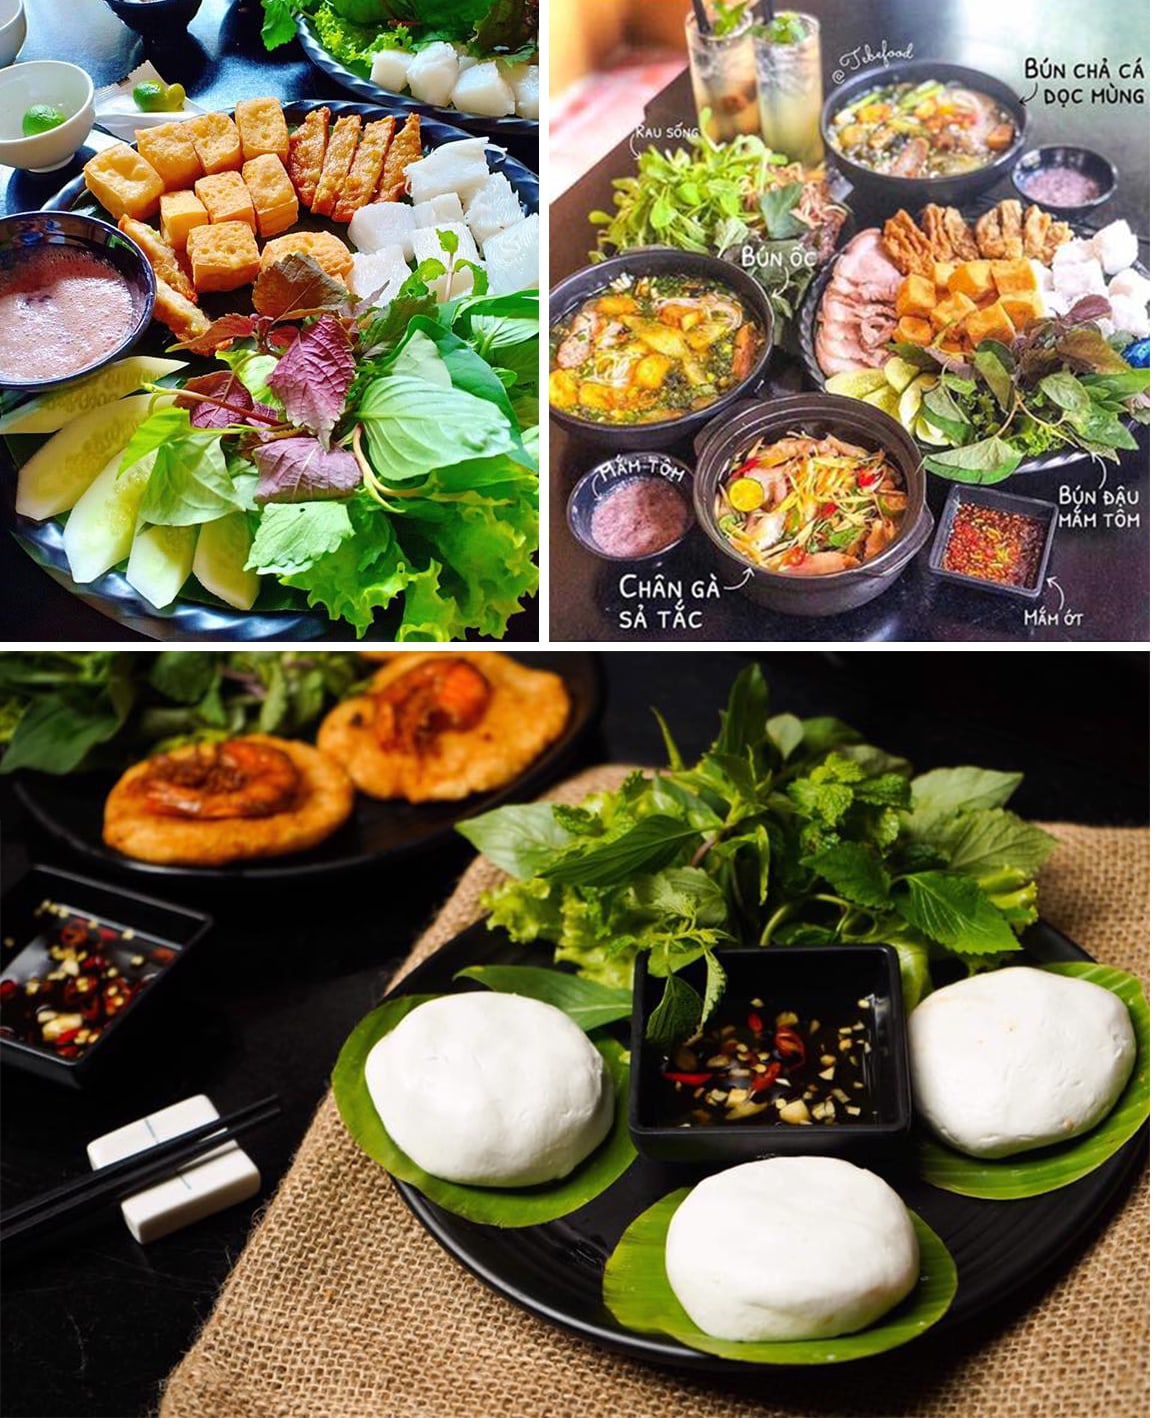 Hình ảnh thực tế các món ăn tại Quán Cô Thụn Bình Thạnh